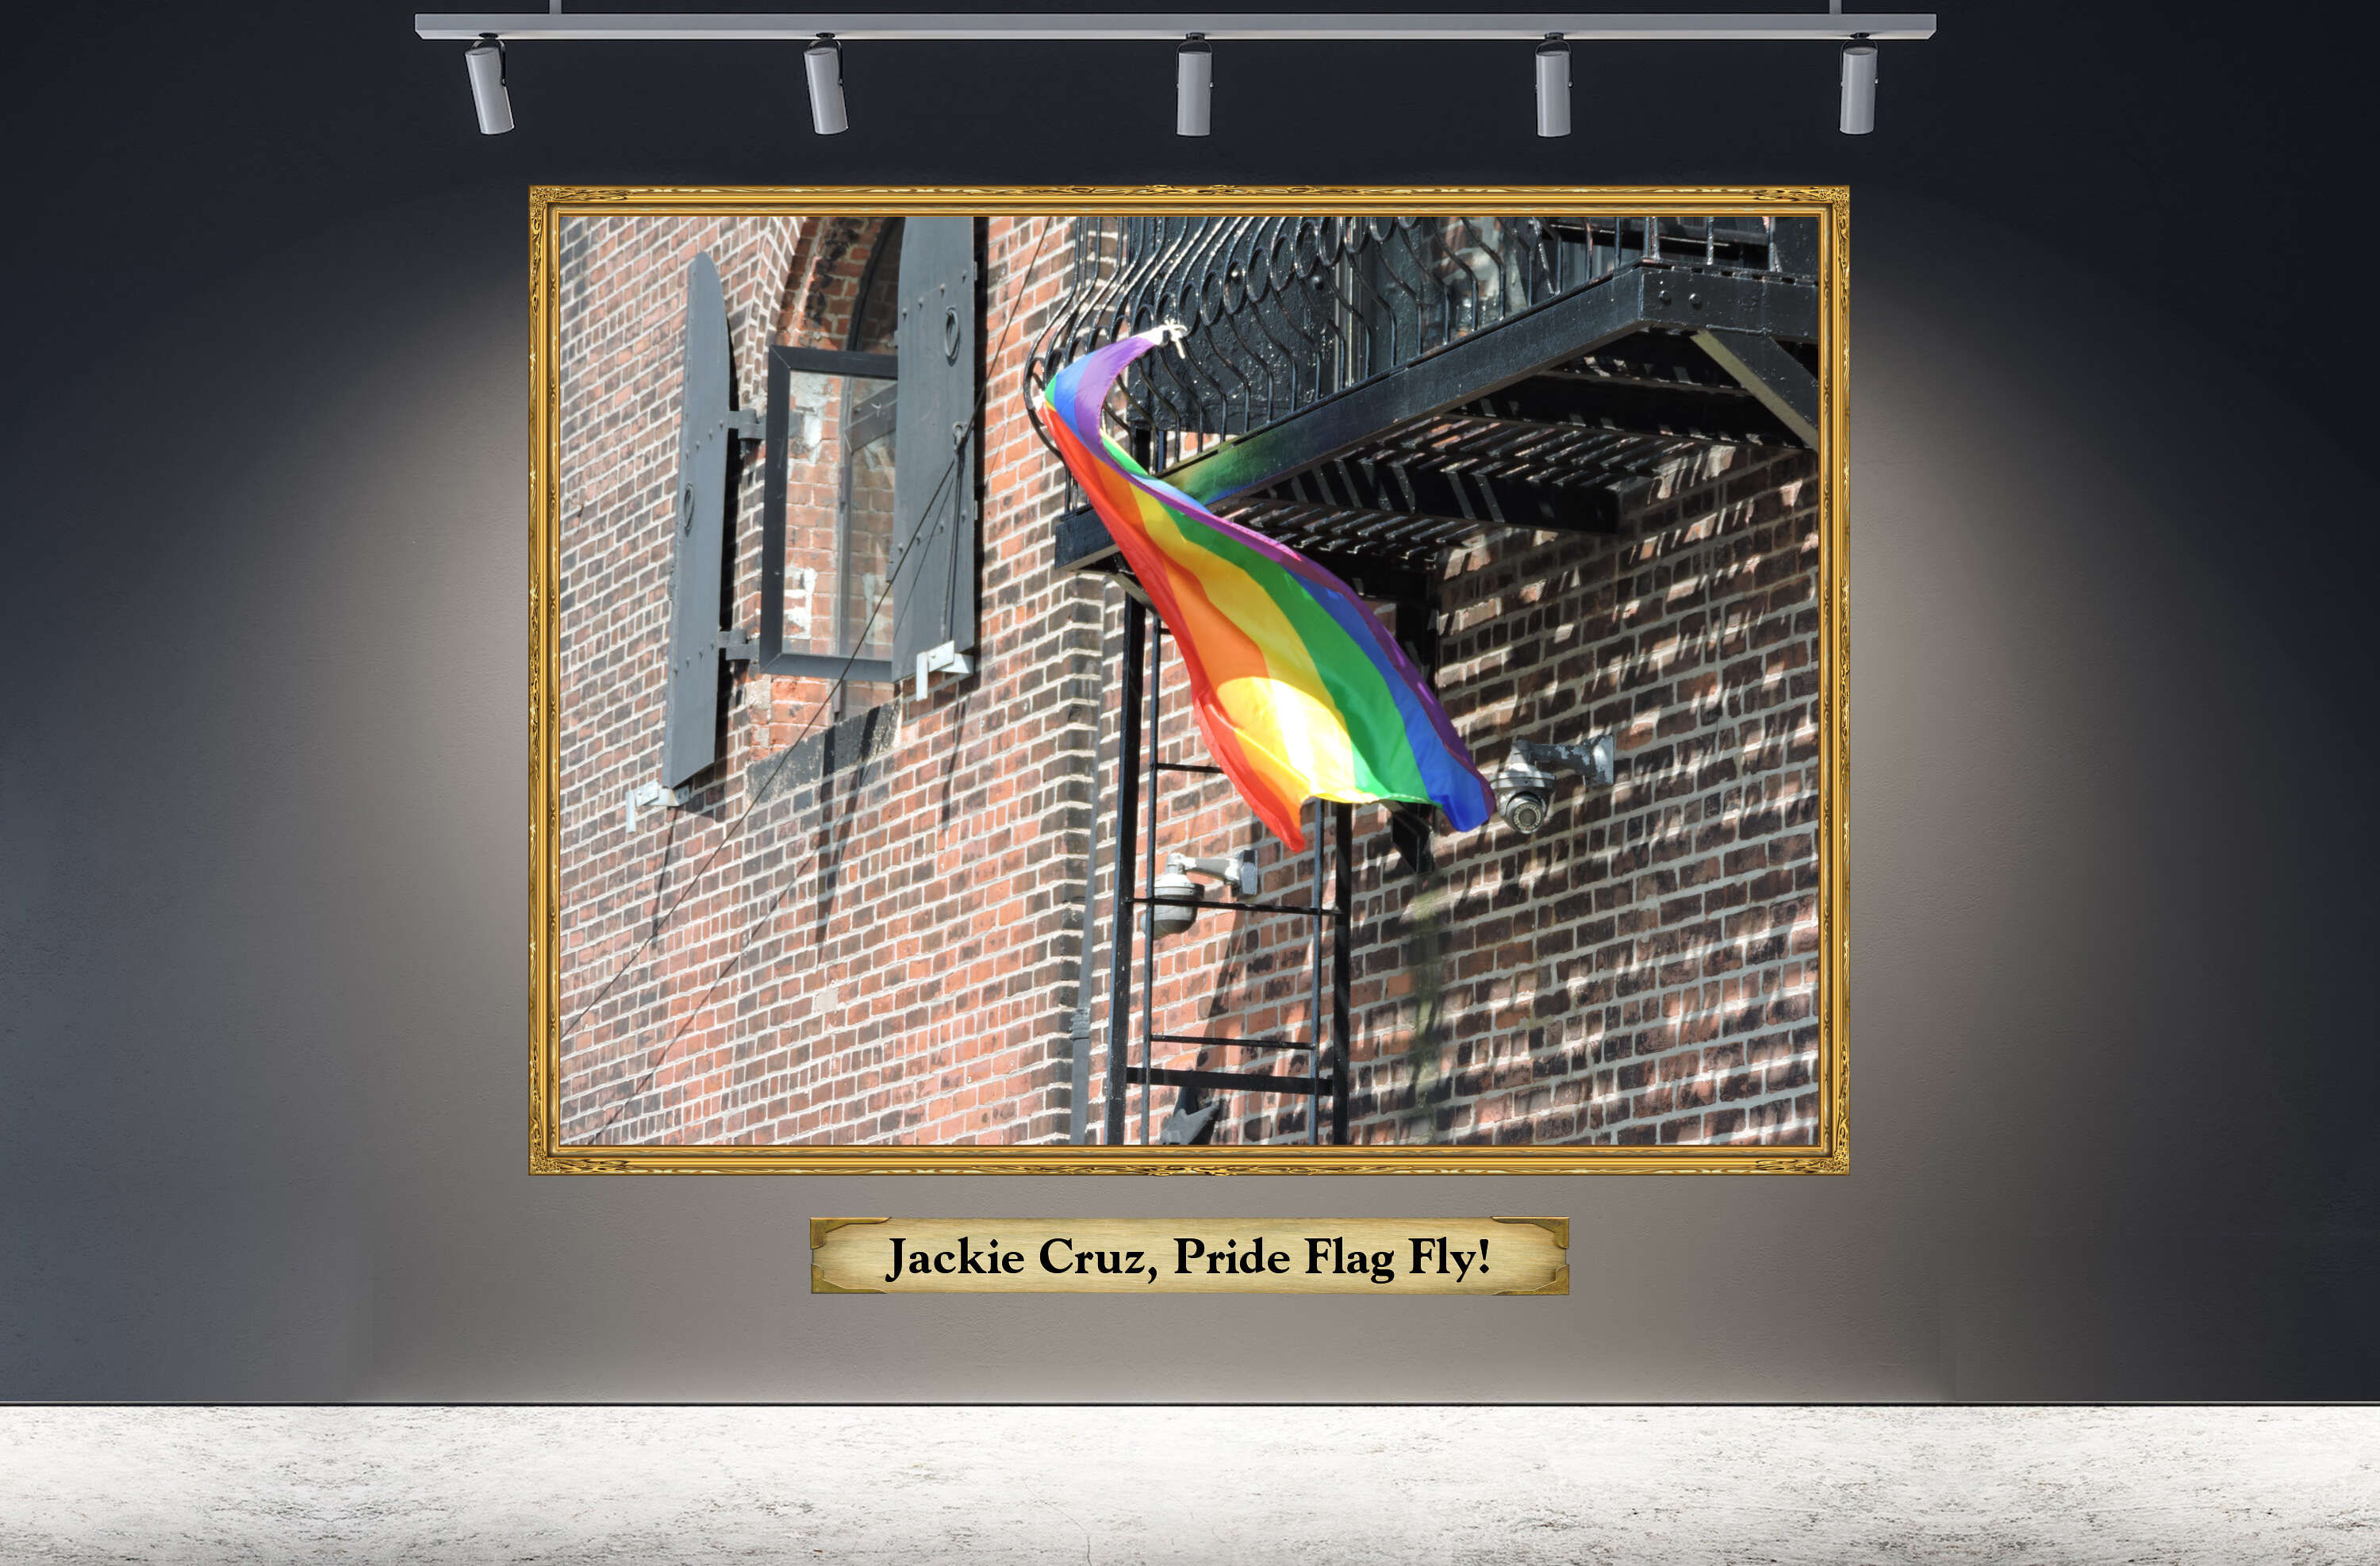 Jackie Cruz, Pride Flag Fly!